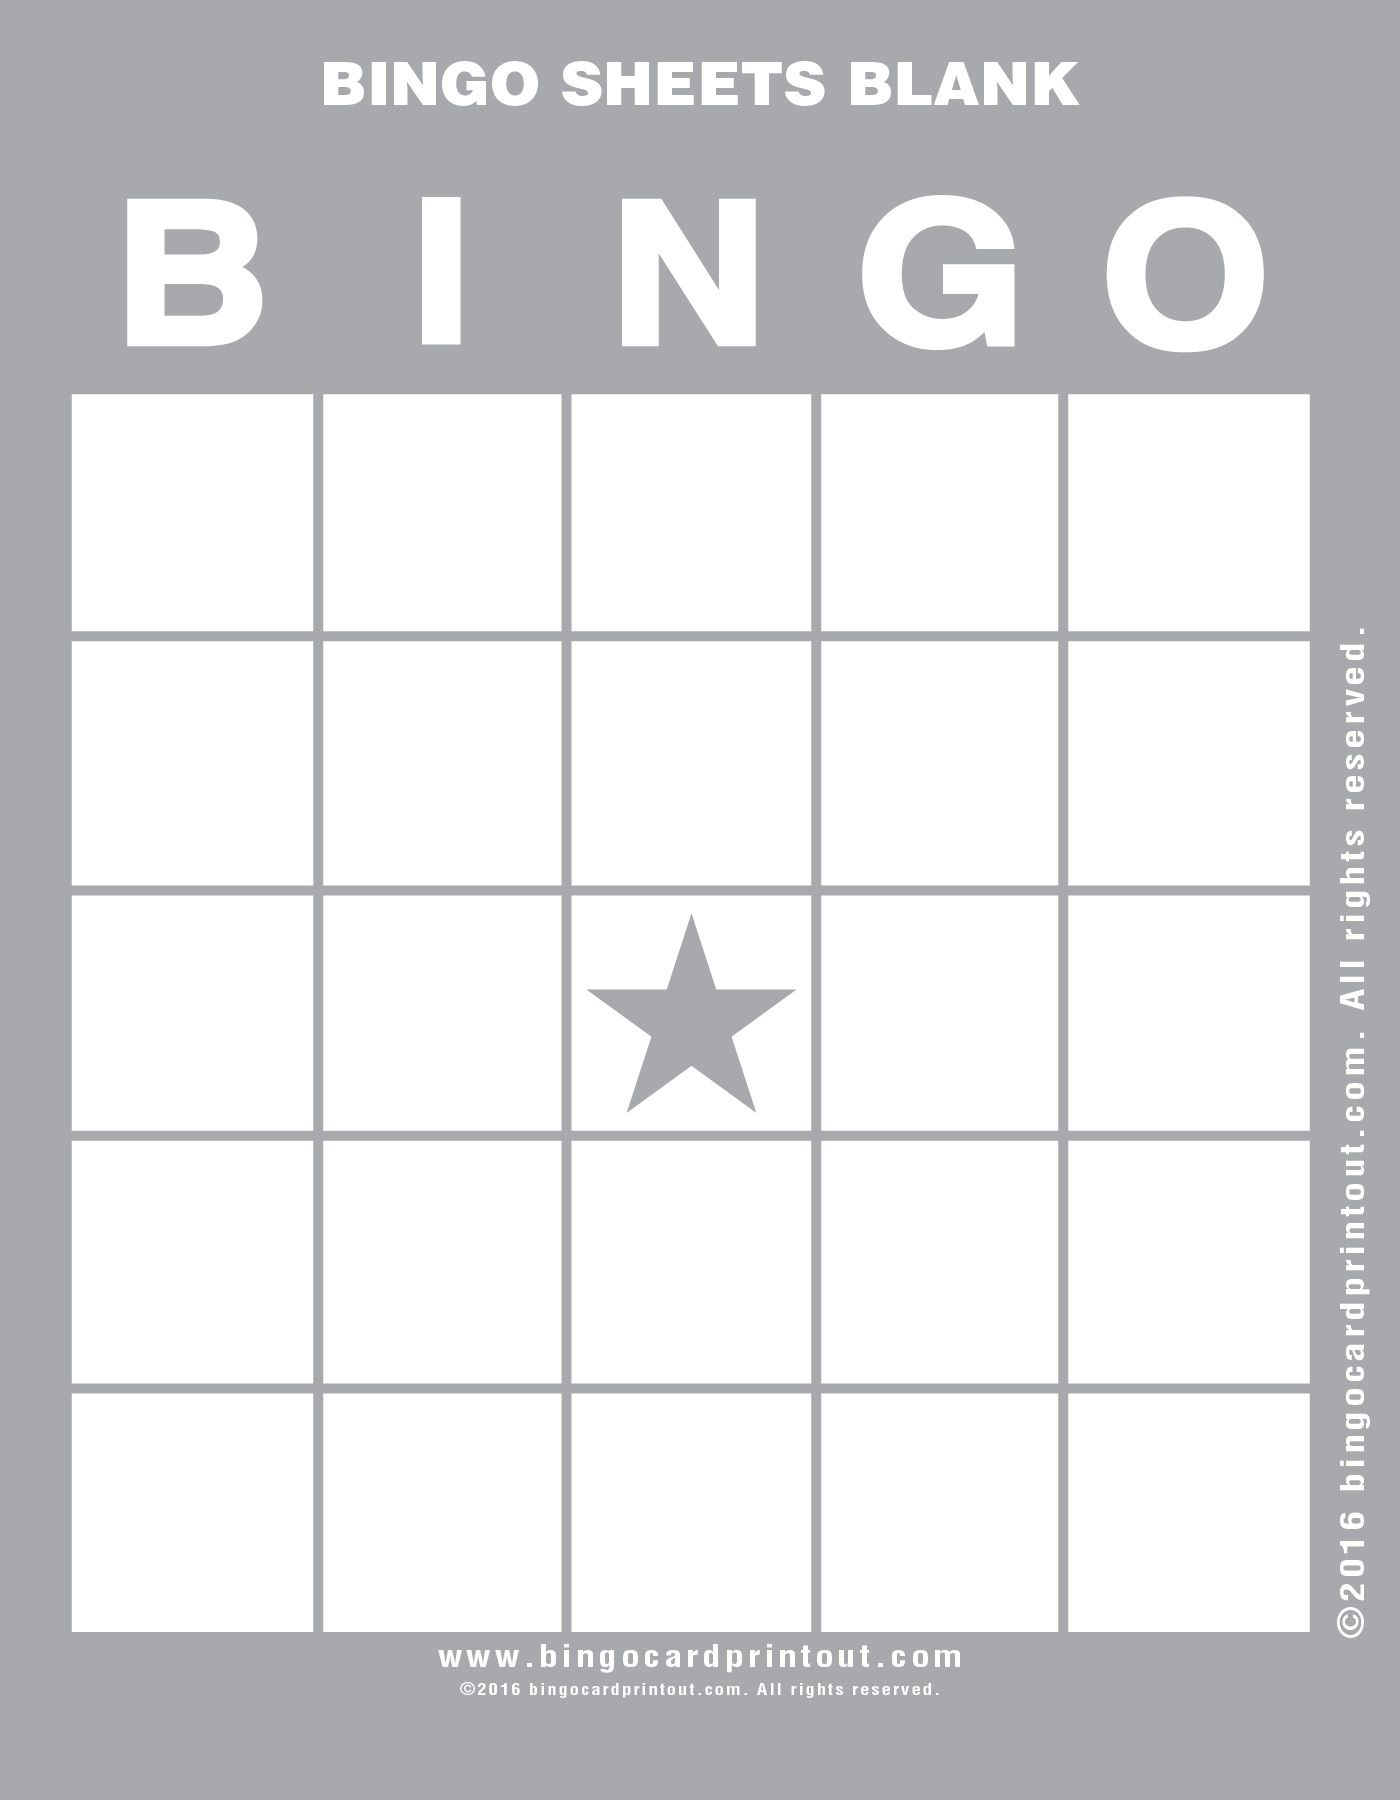 Bingo Sheets Blank | Bingo Sheets, Bingo Card Template